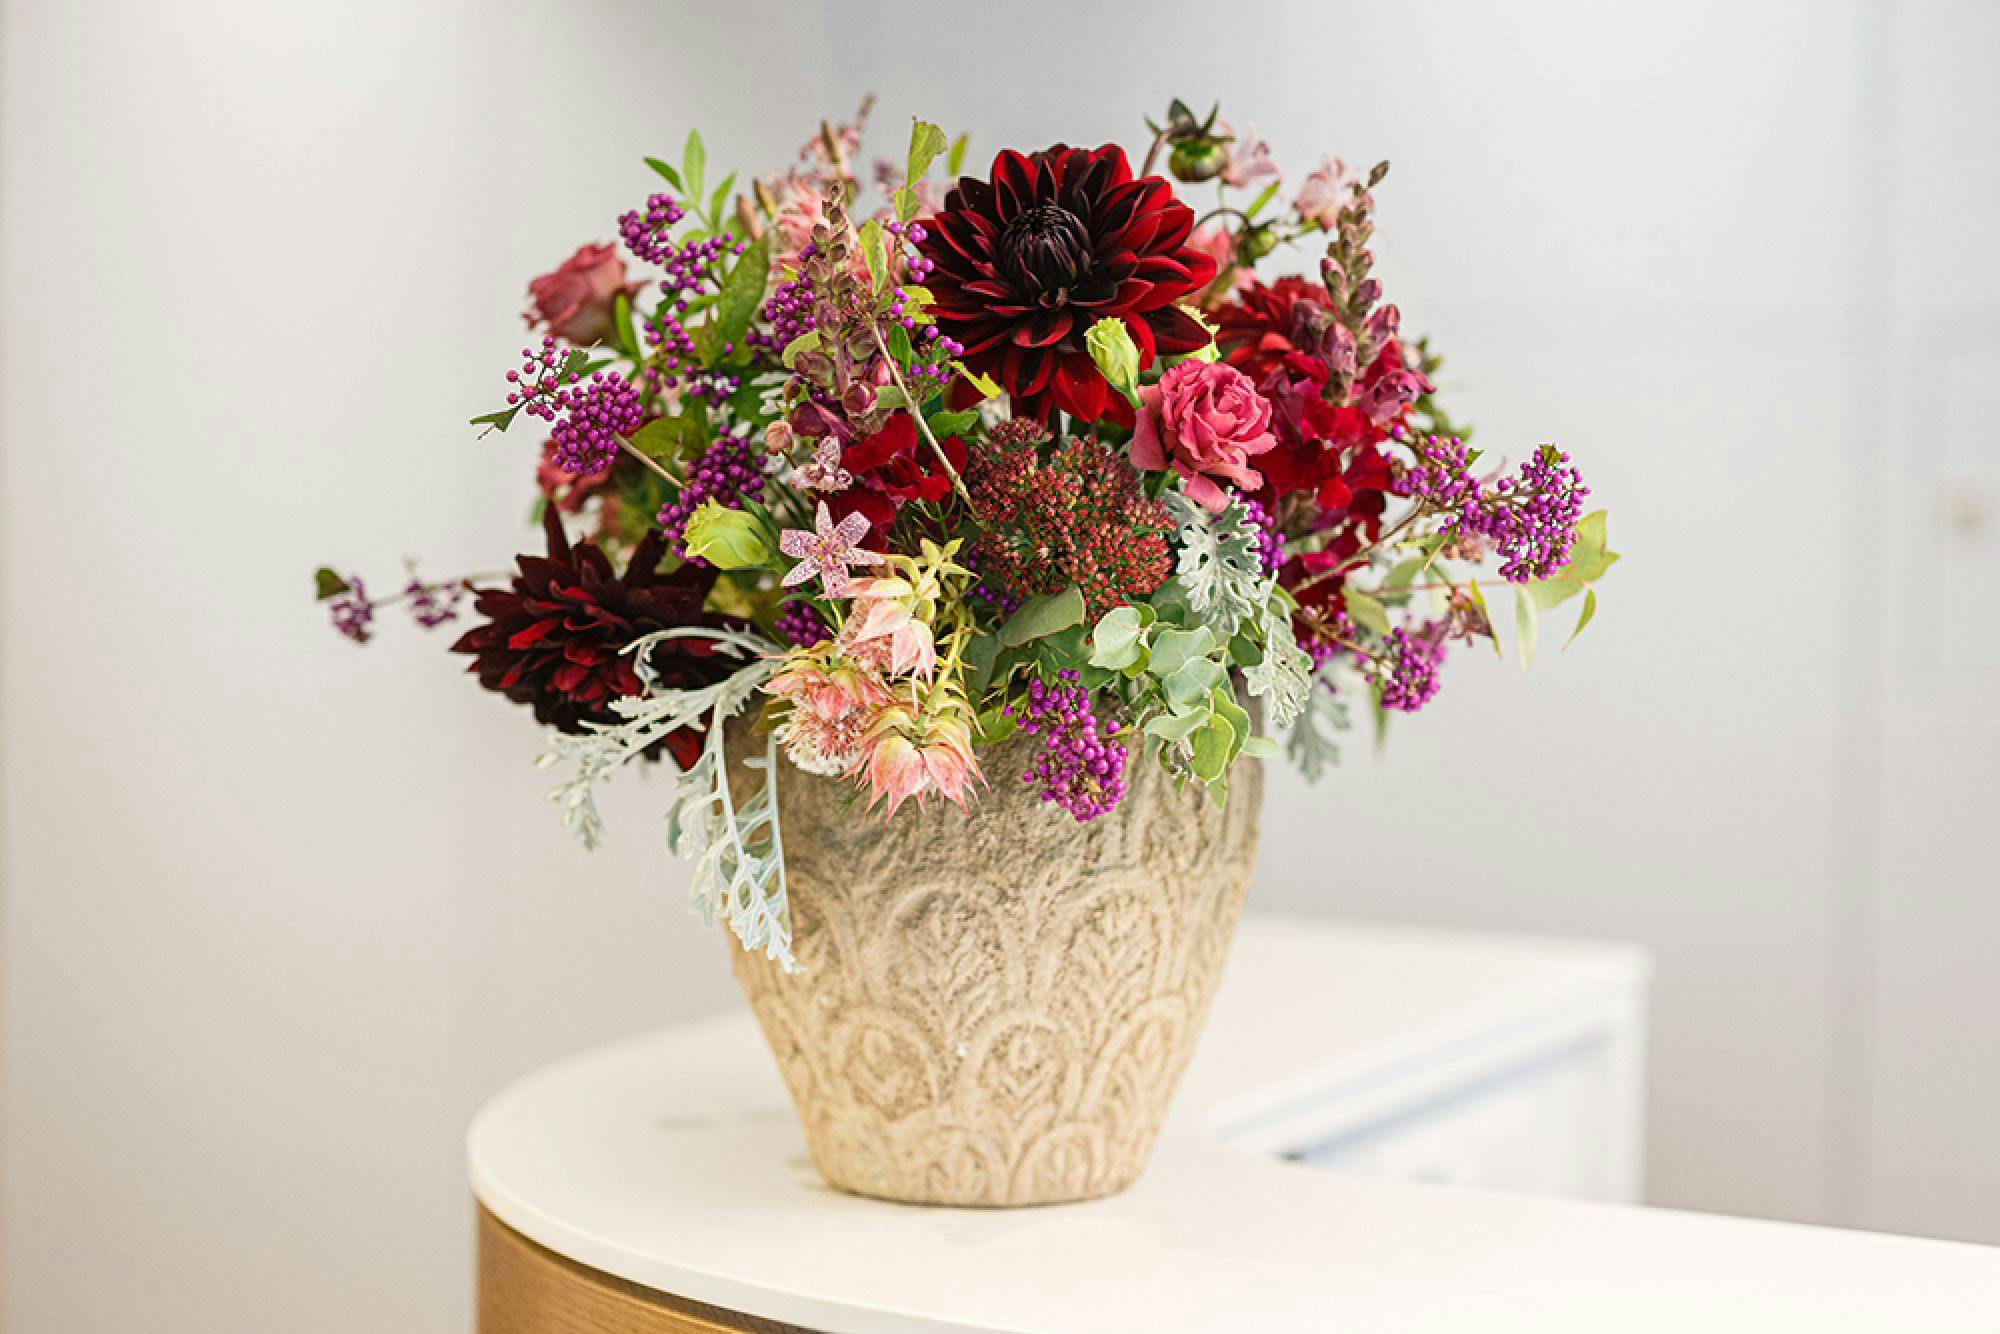 Blumenstrauß mit roten und violetten Blumen in einer verzierten Vase auf einem Tisch.